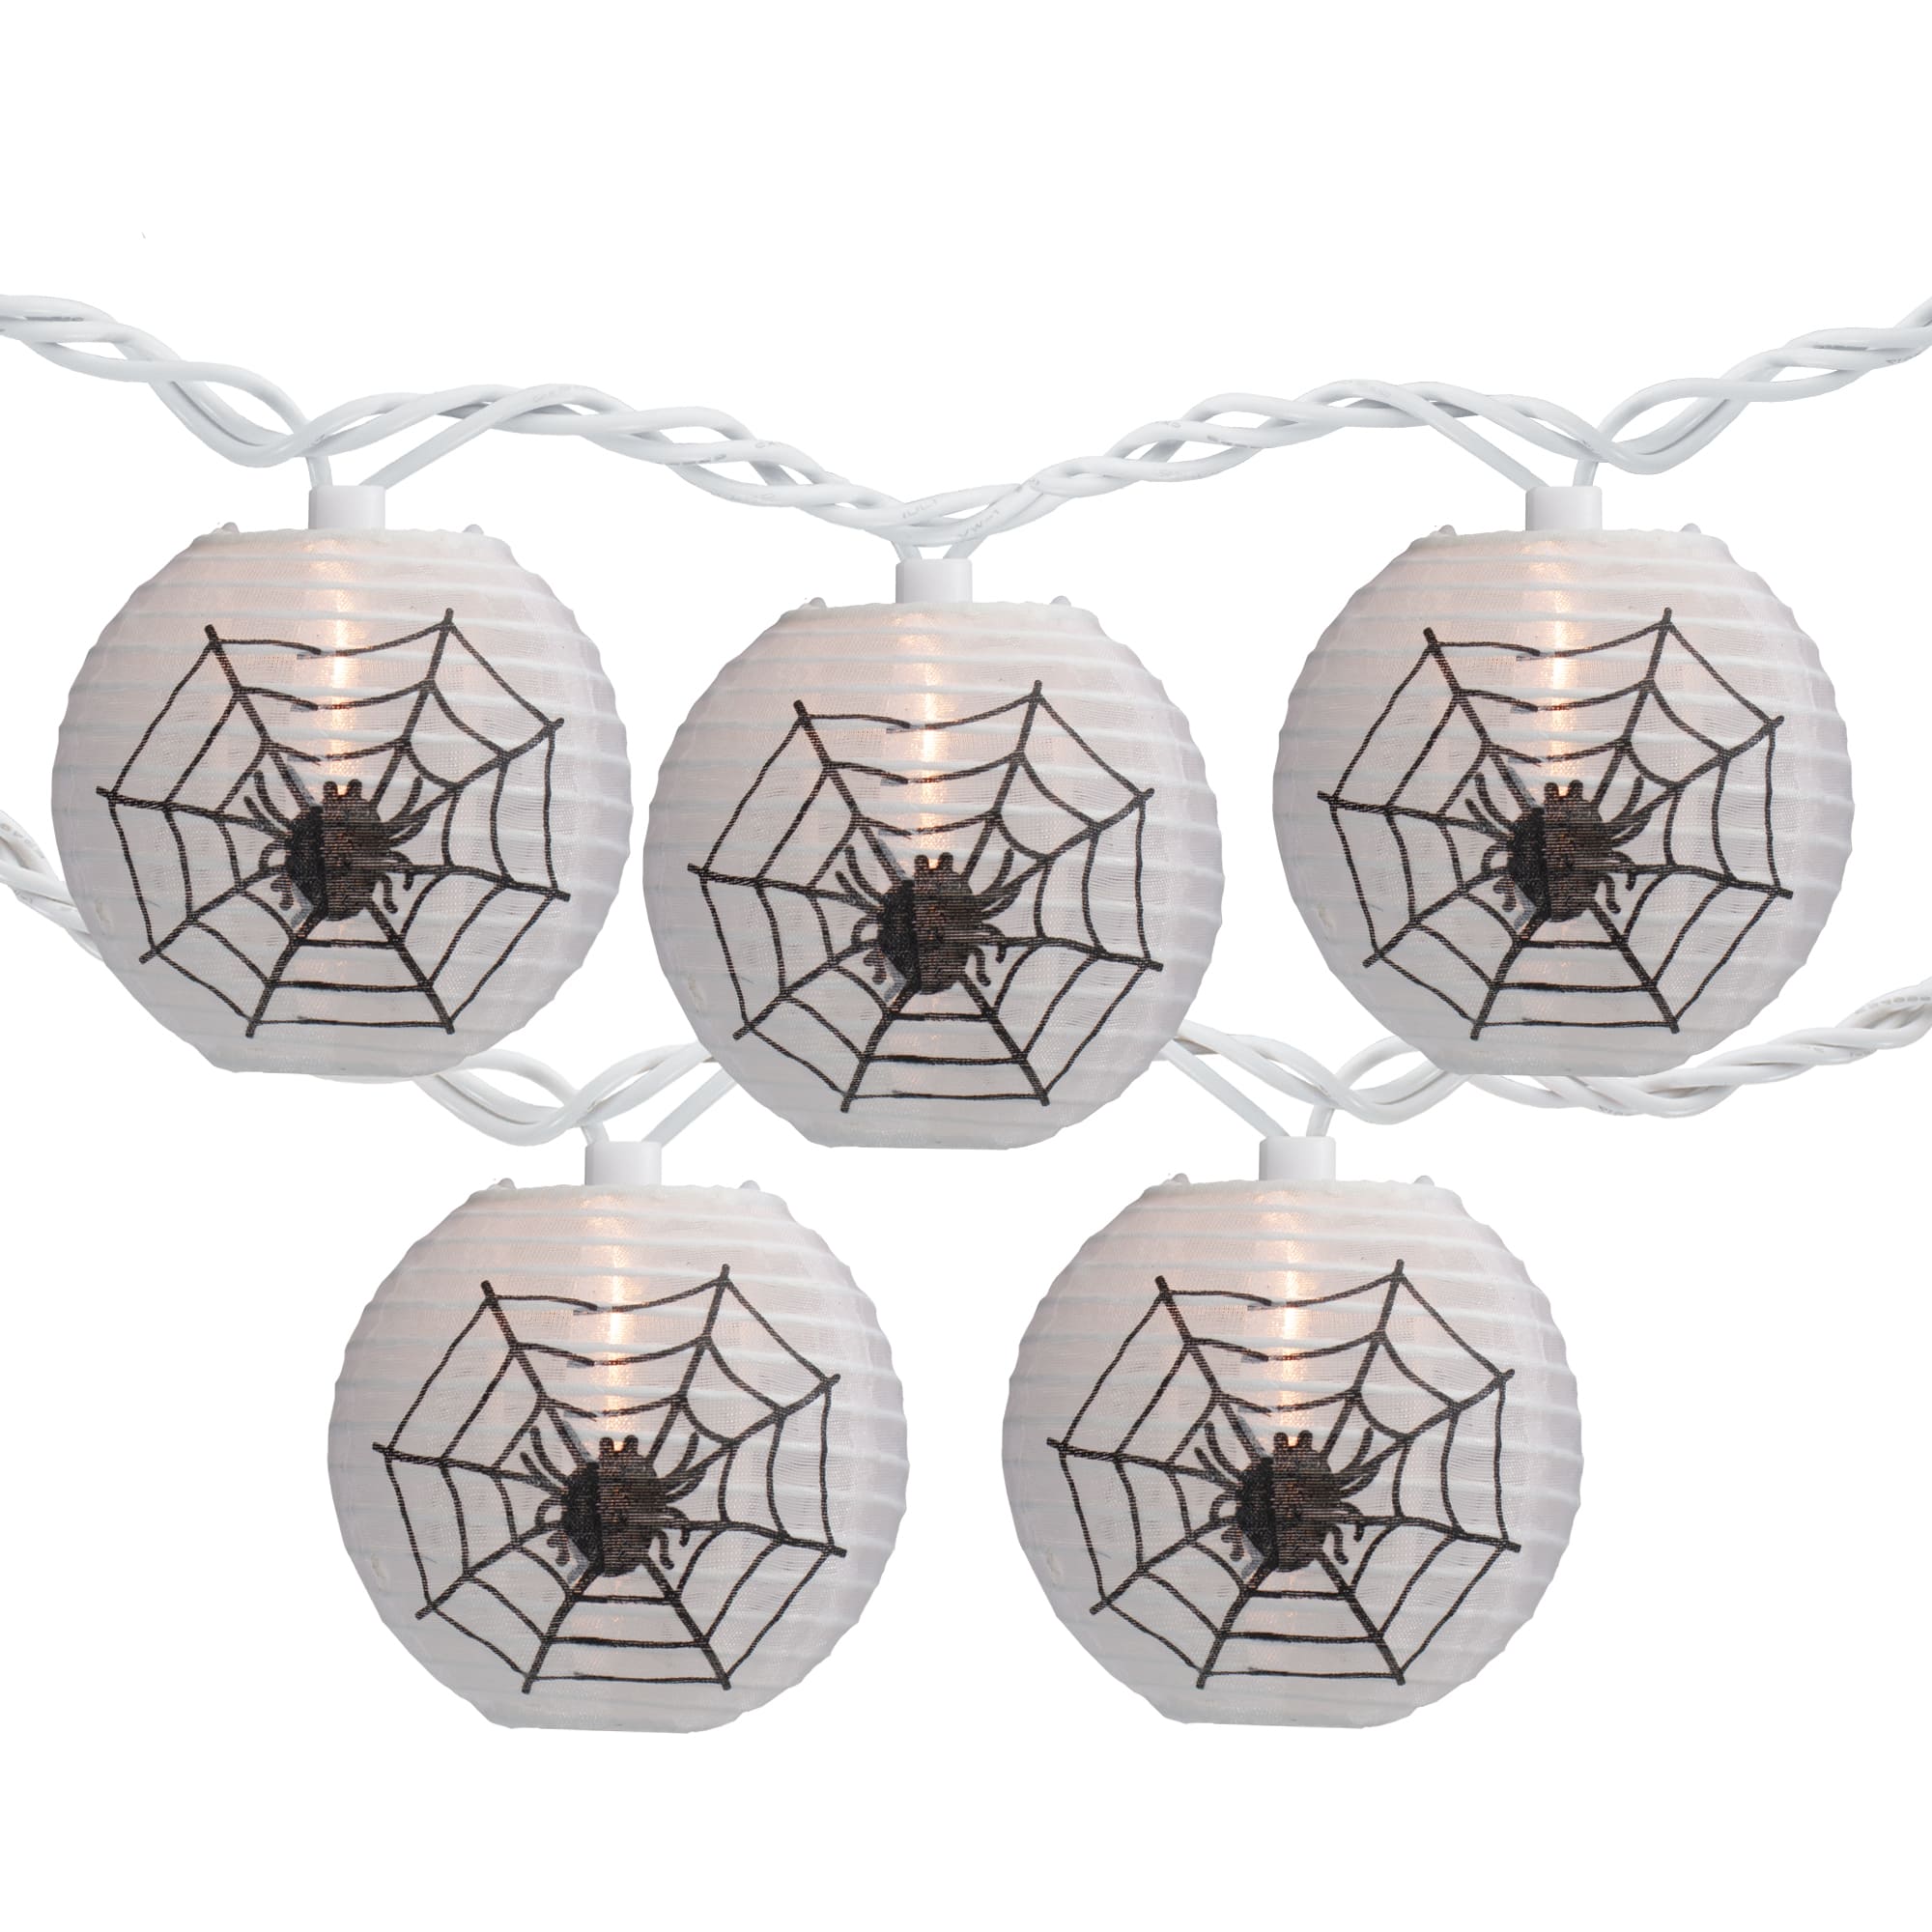 10ct. Black Spider in Web Paper Lantern Halloween Lights